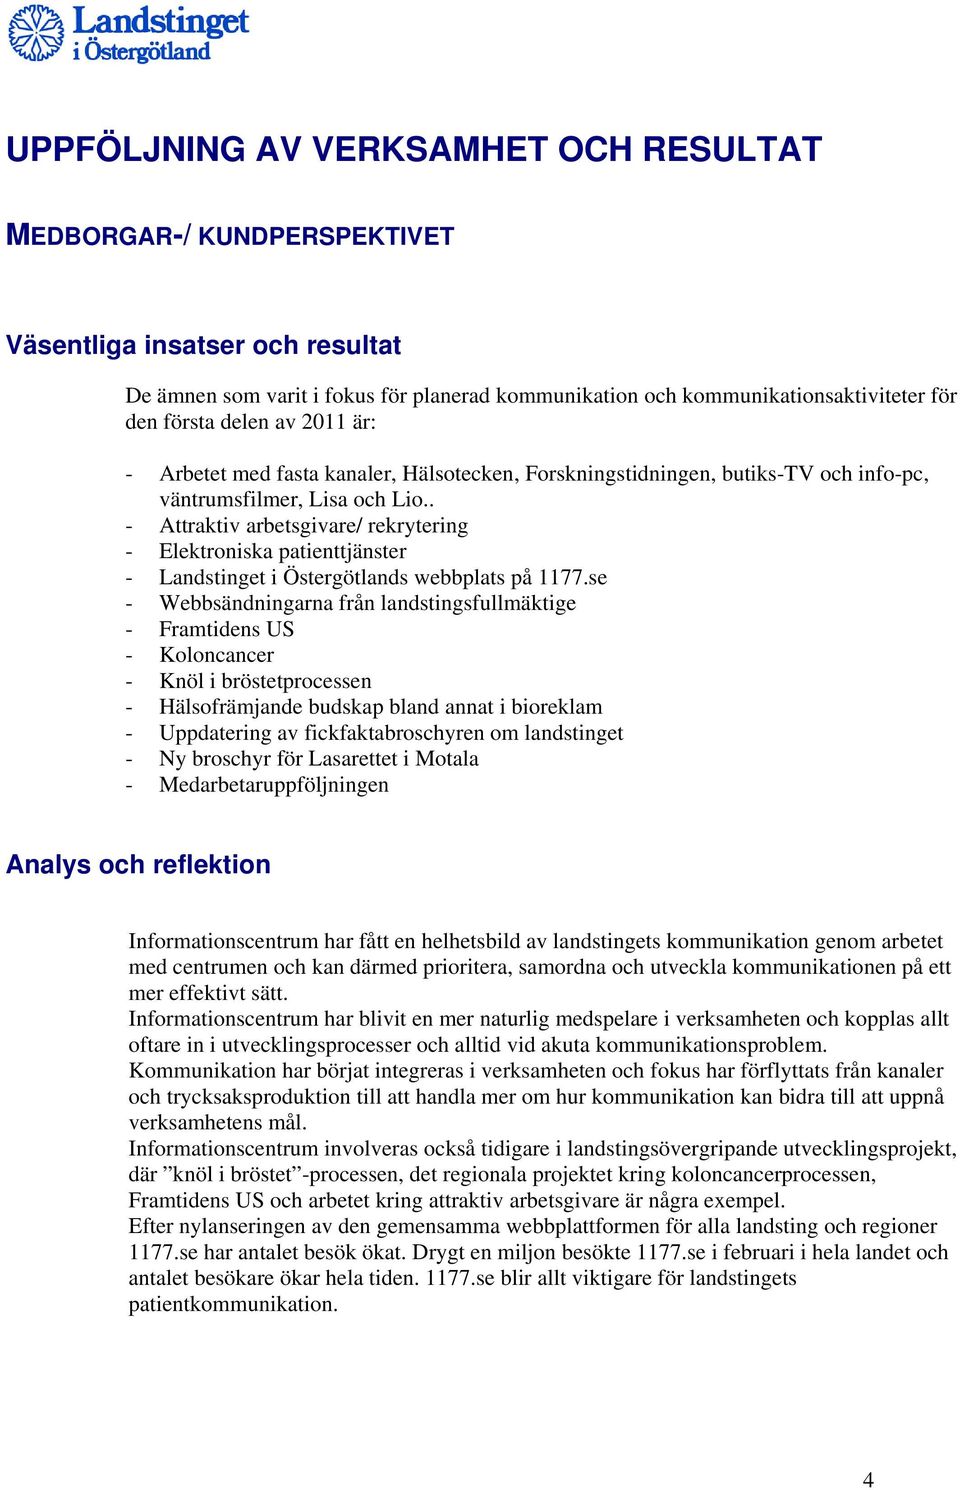 . - Attraktiv arbetsgivare/ rekrytering - Elektroniska patienttjänster - Landstinget i Östergötlands webbplats på 1177.